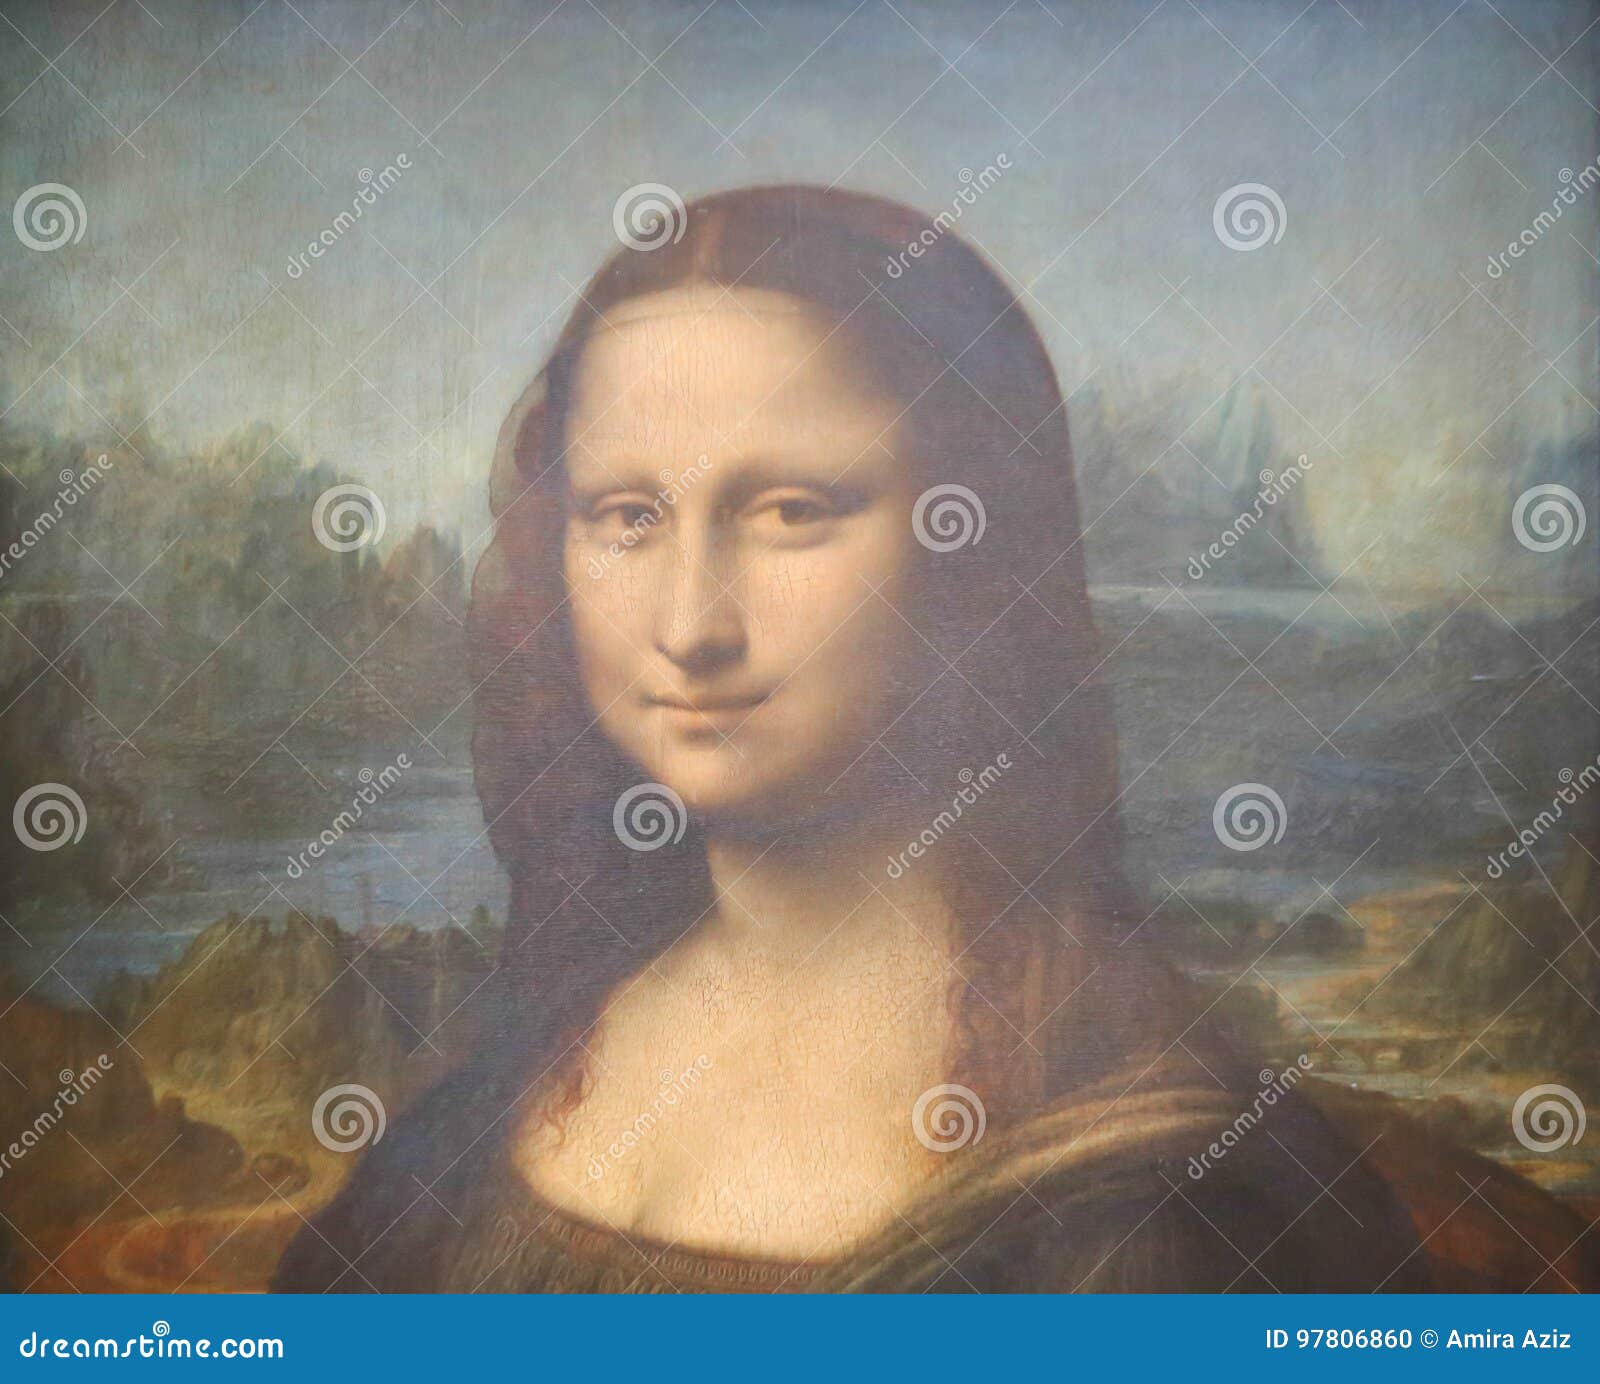 Mona Lisa Monalisa Bald Meme | Postcard